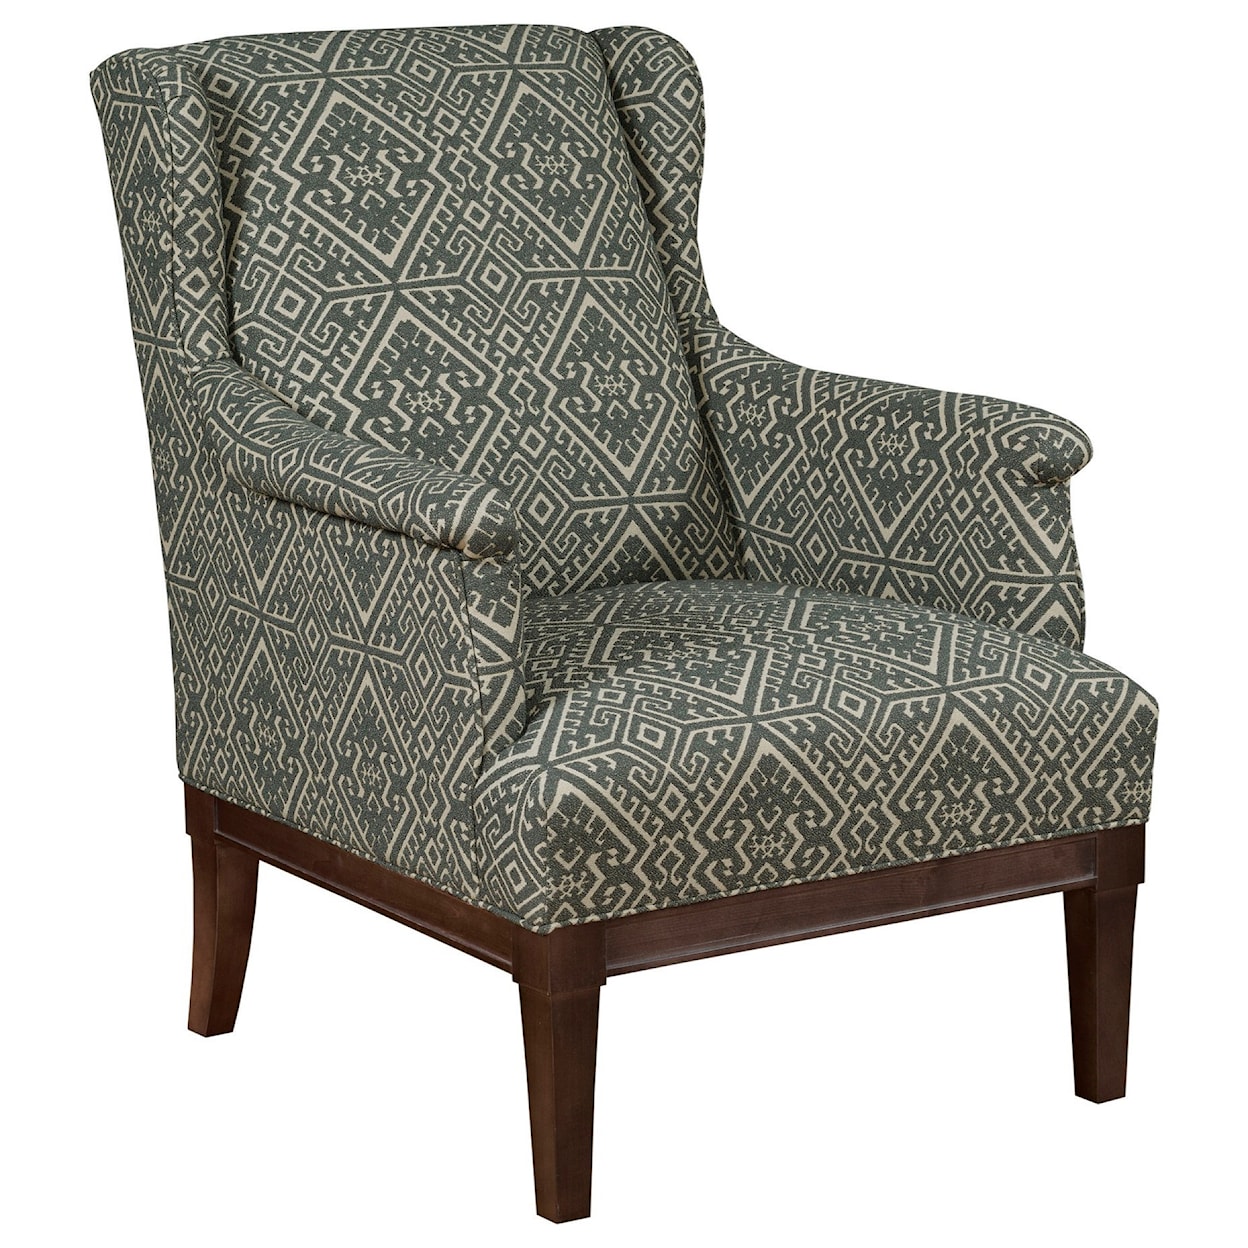 Kincaid Furniture Accent Chairs Chair